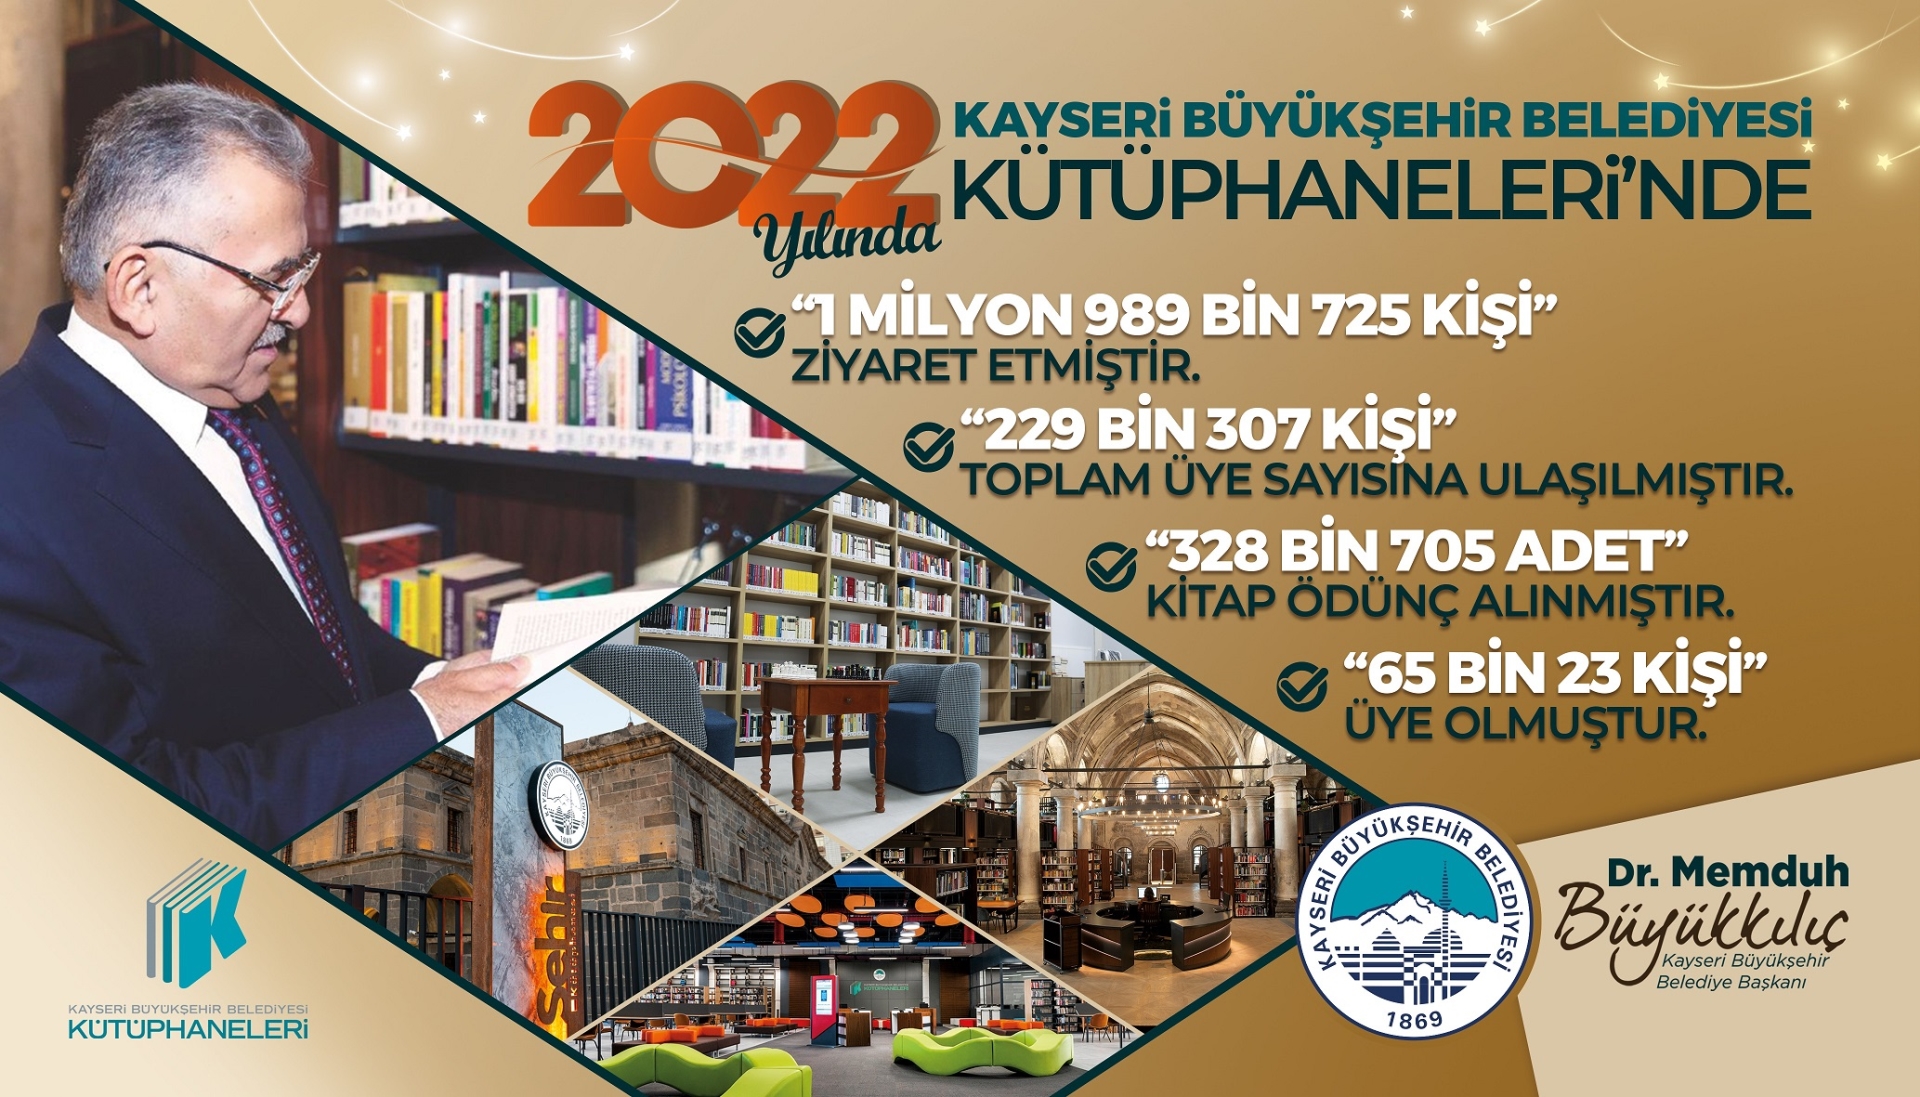 Kayseri’nin Kültür Hazinesi Büyükşehir Kütüphaneleri’nden 2022’de Yaklaşık 2 Milyon Kişiye Hizmet